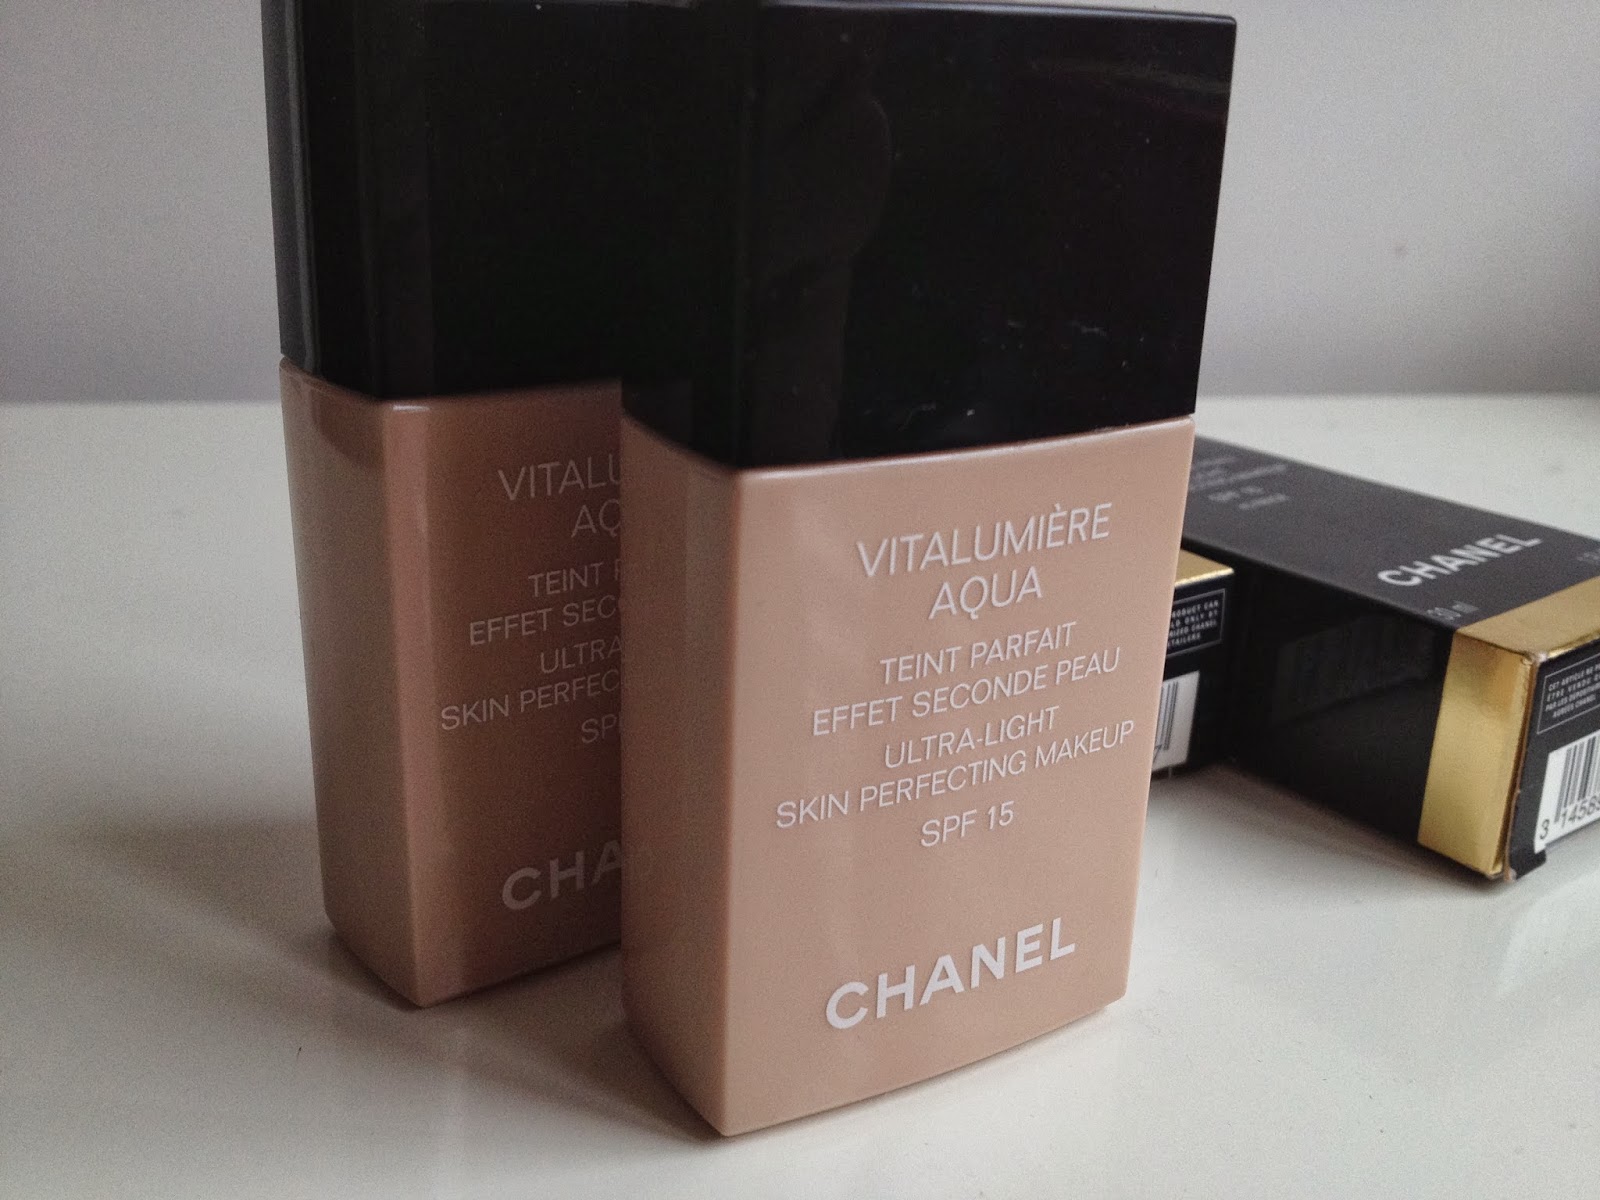 My Beautopia: The perfect foundation: Chanel Vitalumiere Aqua